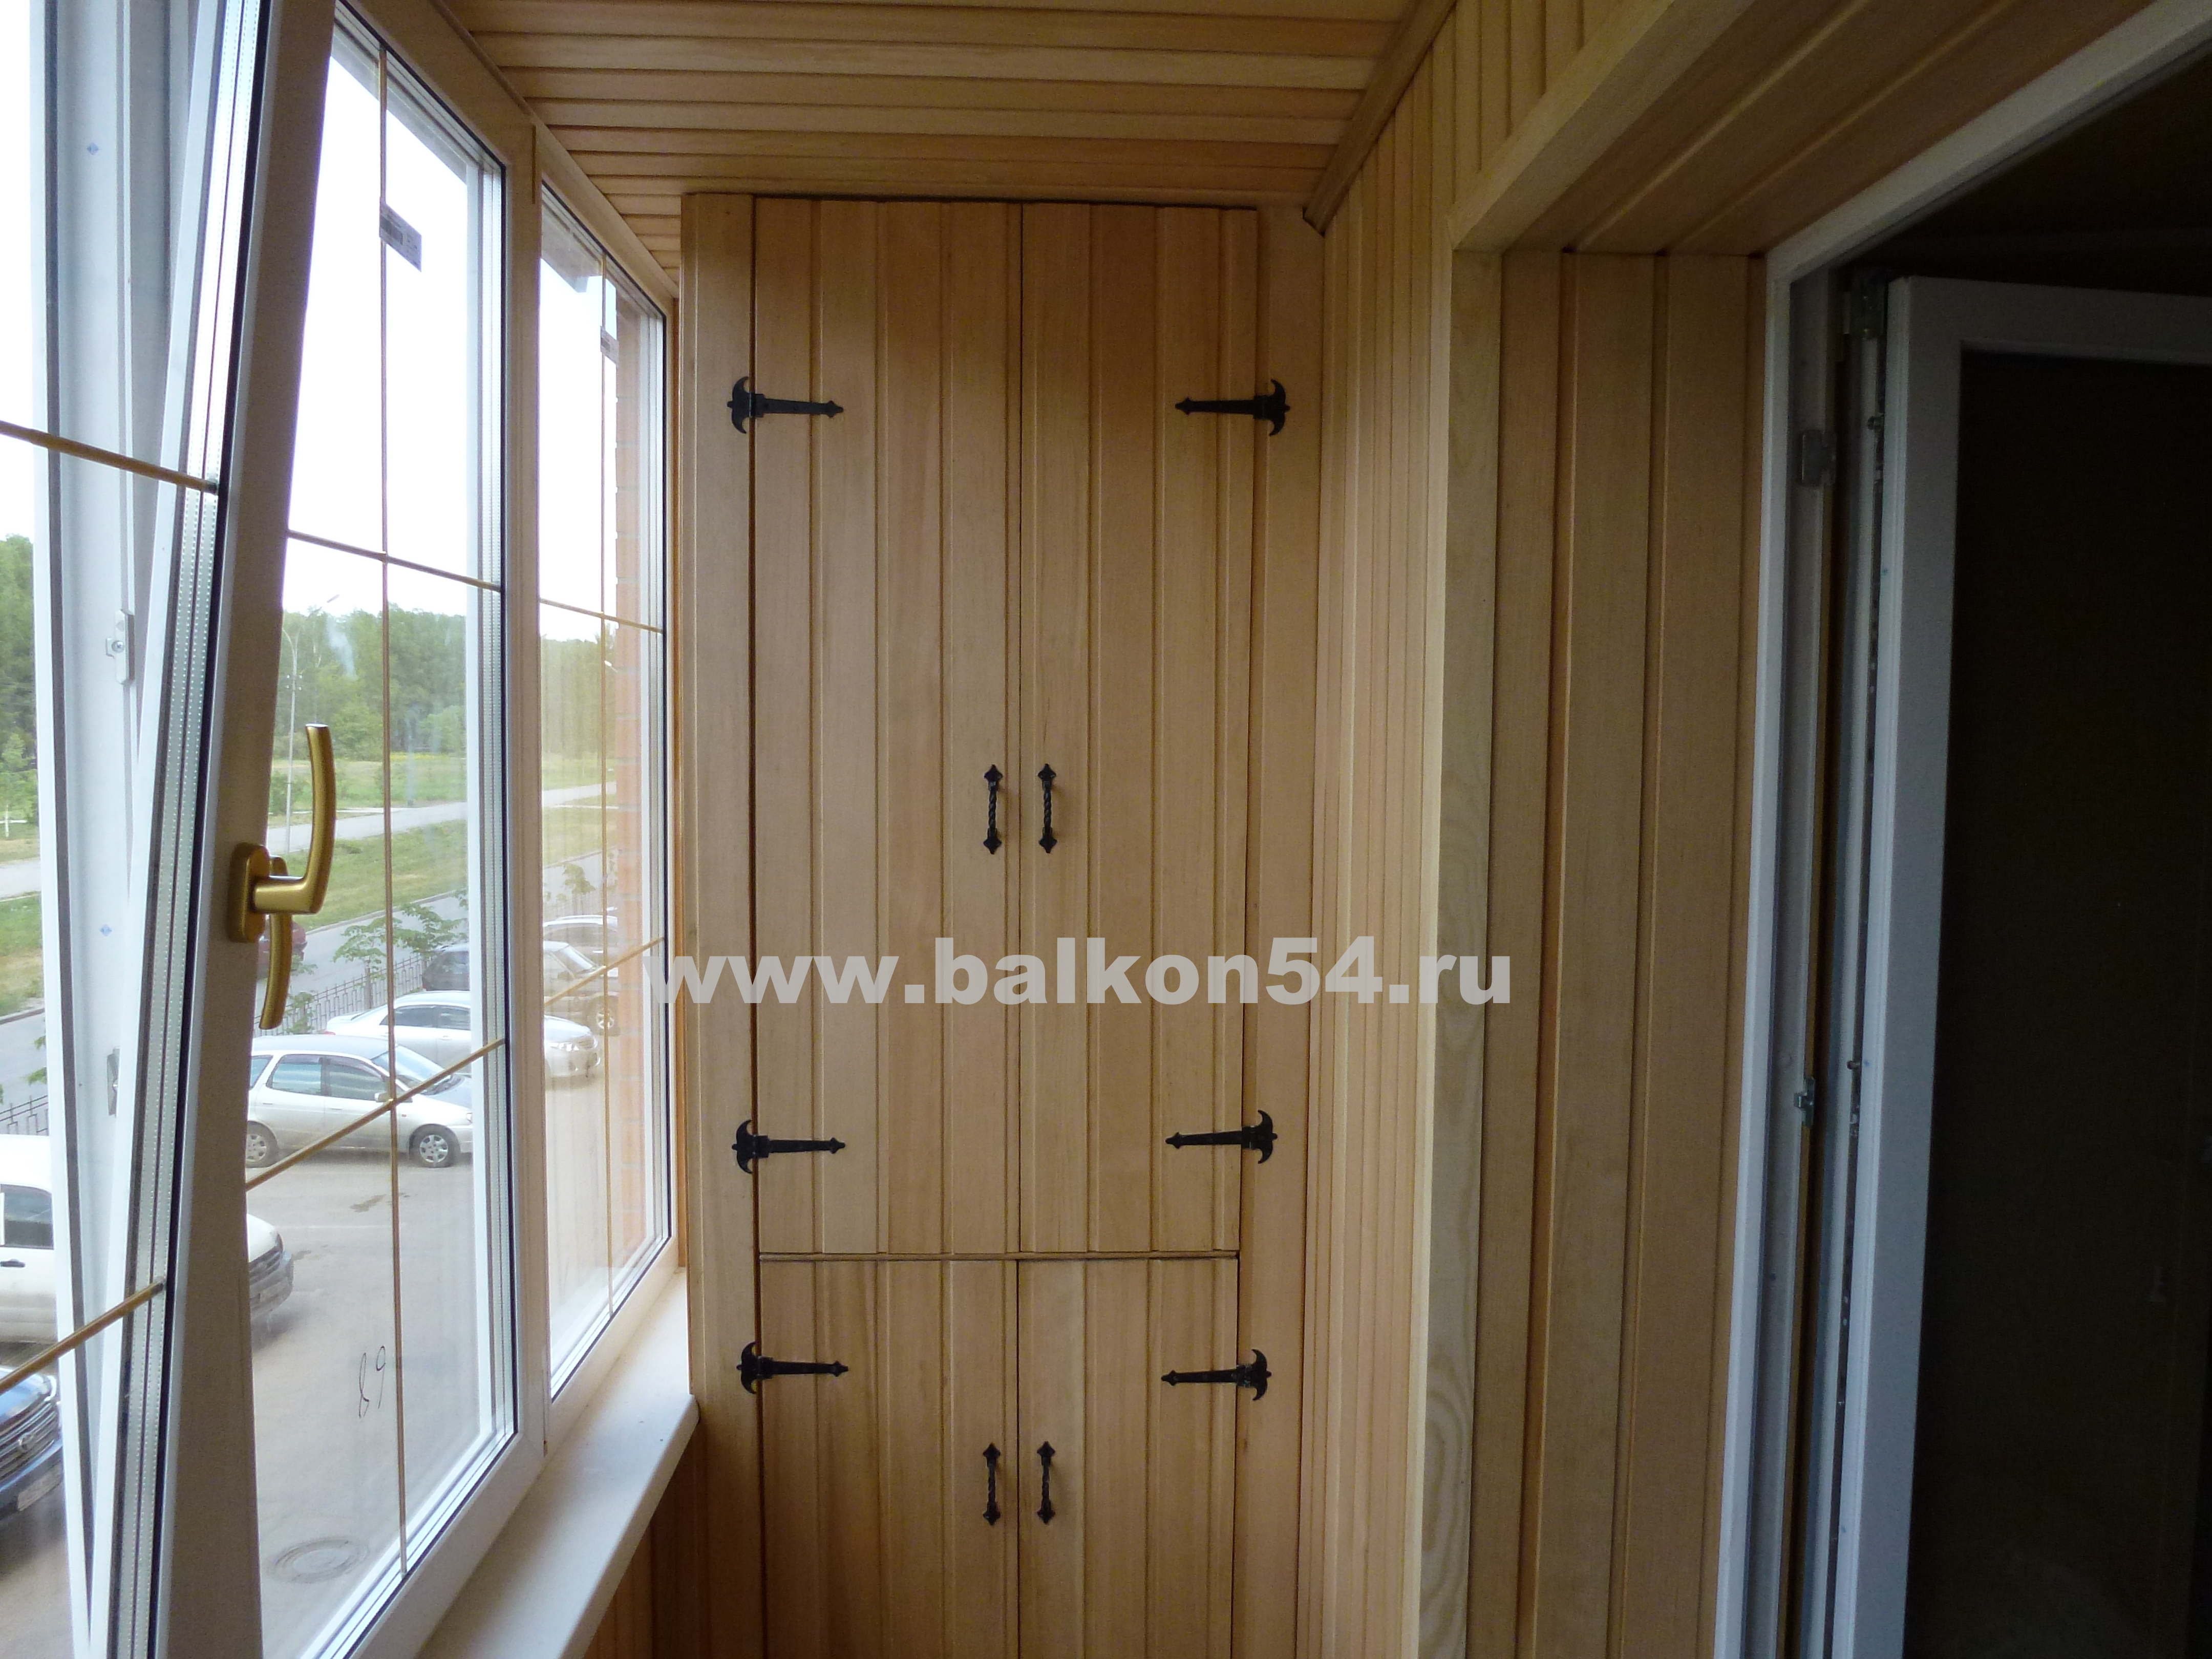 Мебель для балконов, шкафы на балкон